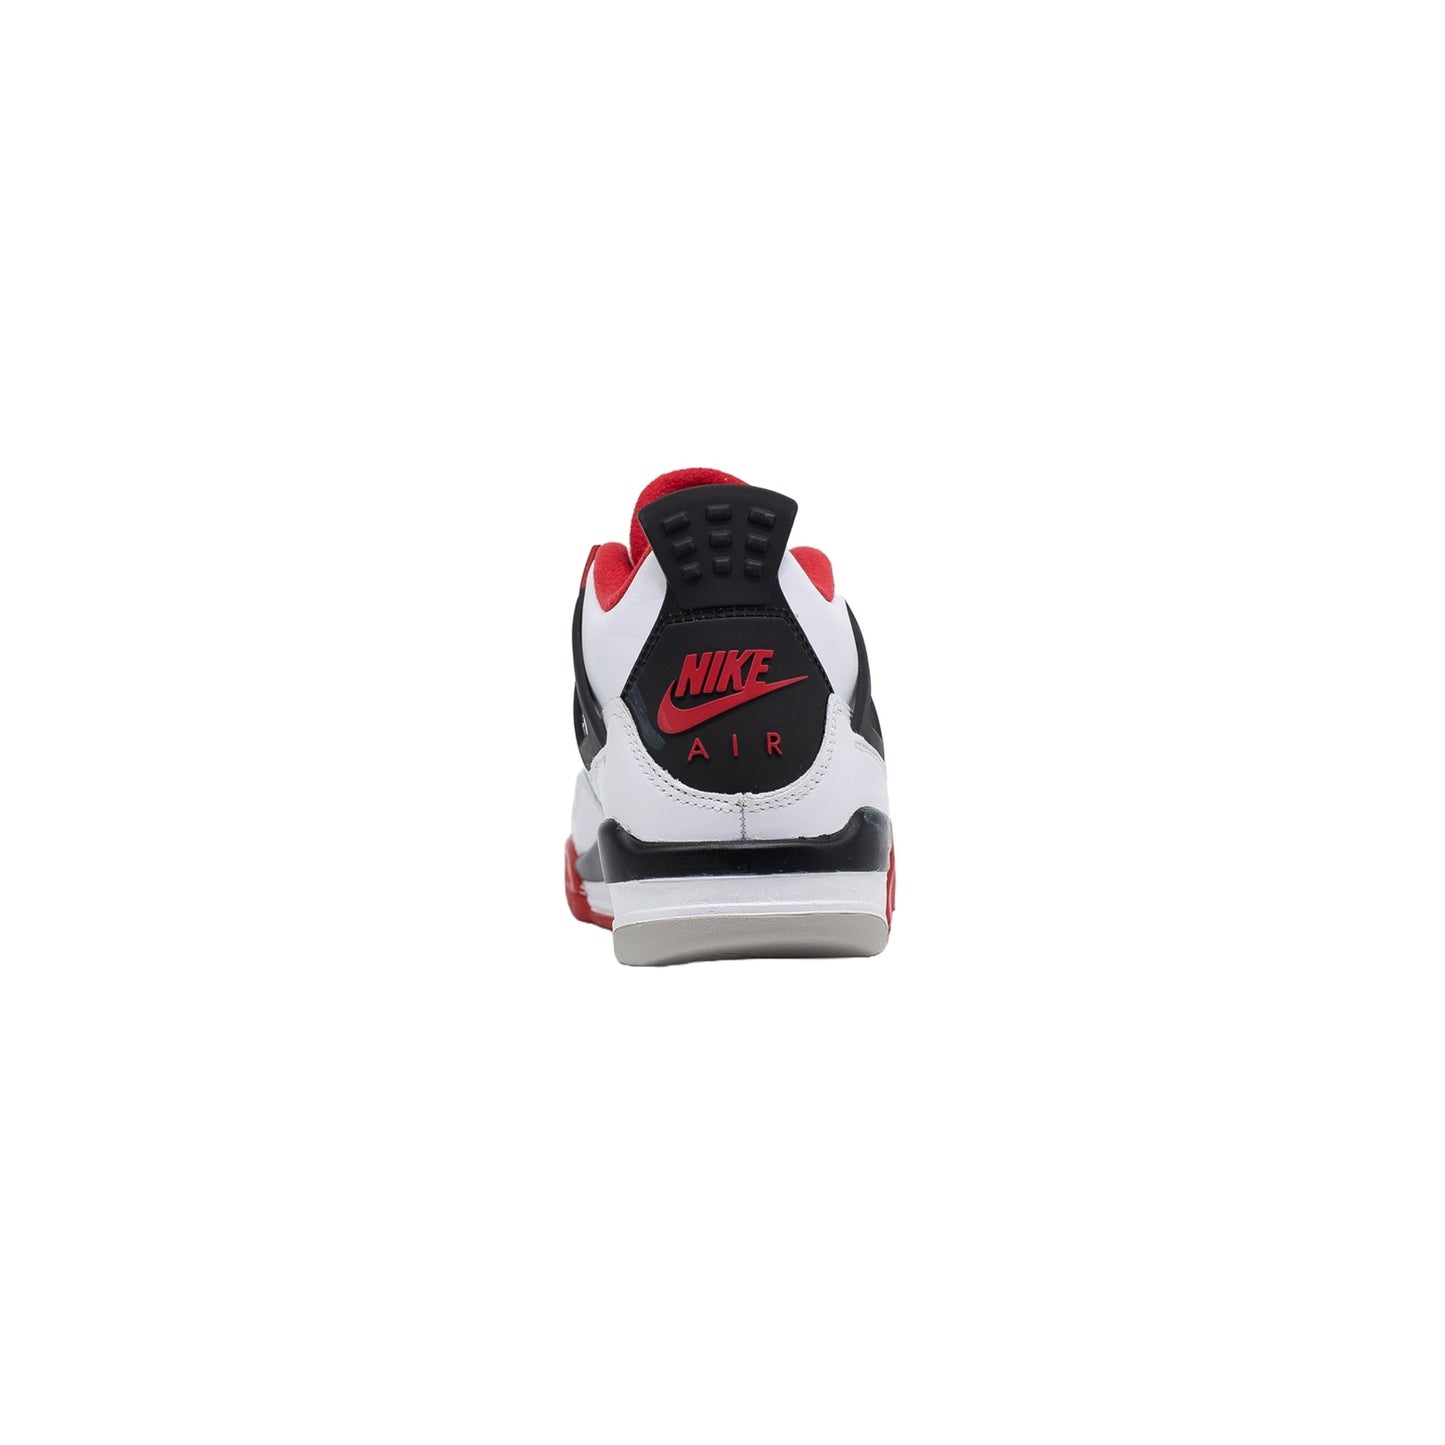 Air Jordan 4 (GS), Fire Red (2020)